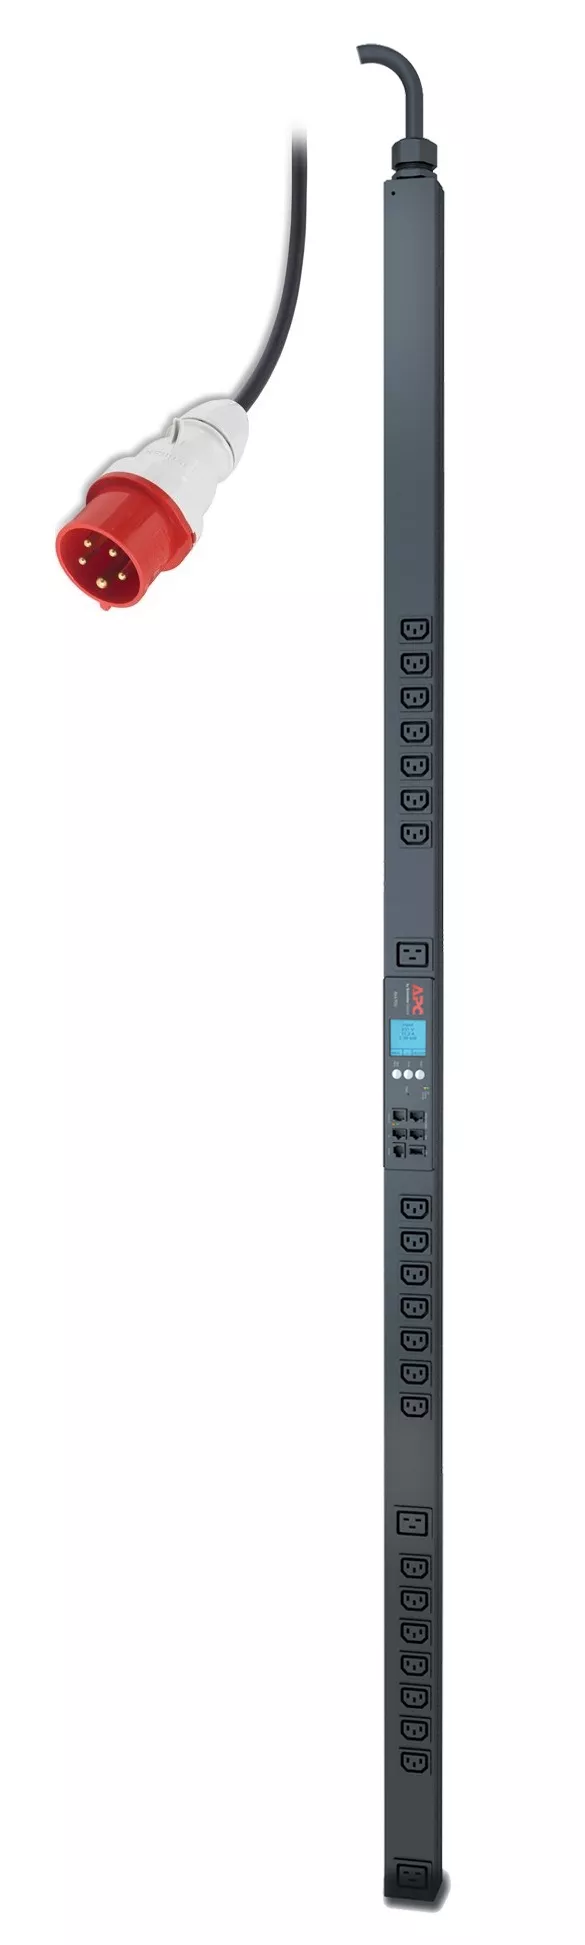 Achat APC Rack PDU 2G Metered-by-Outlet ZeroU 11.0kW 230V 21 et autres produits de la marque APC